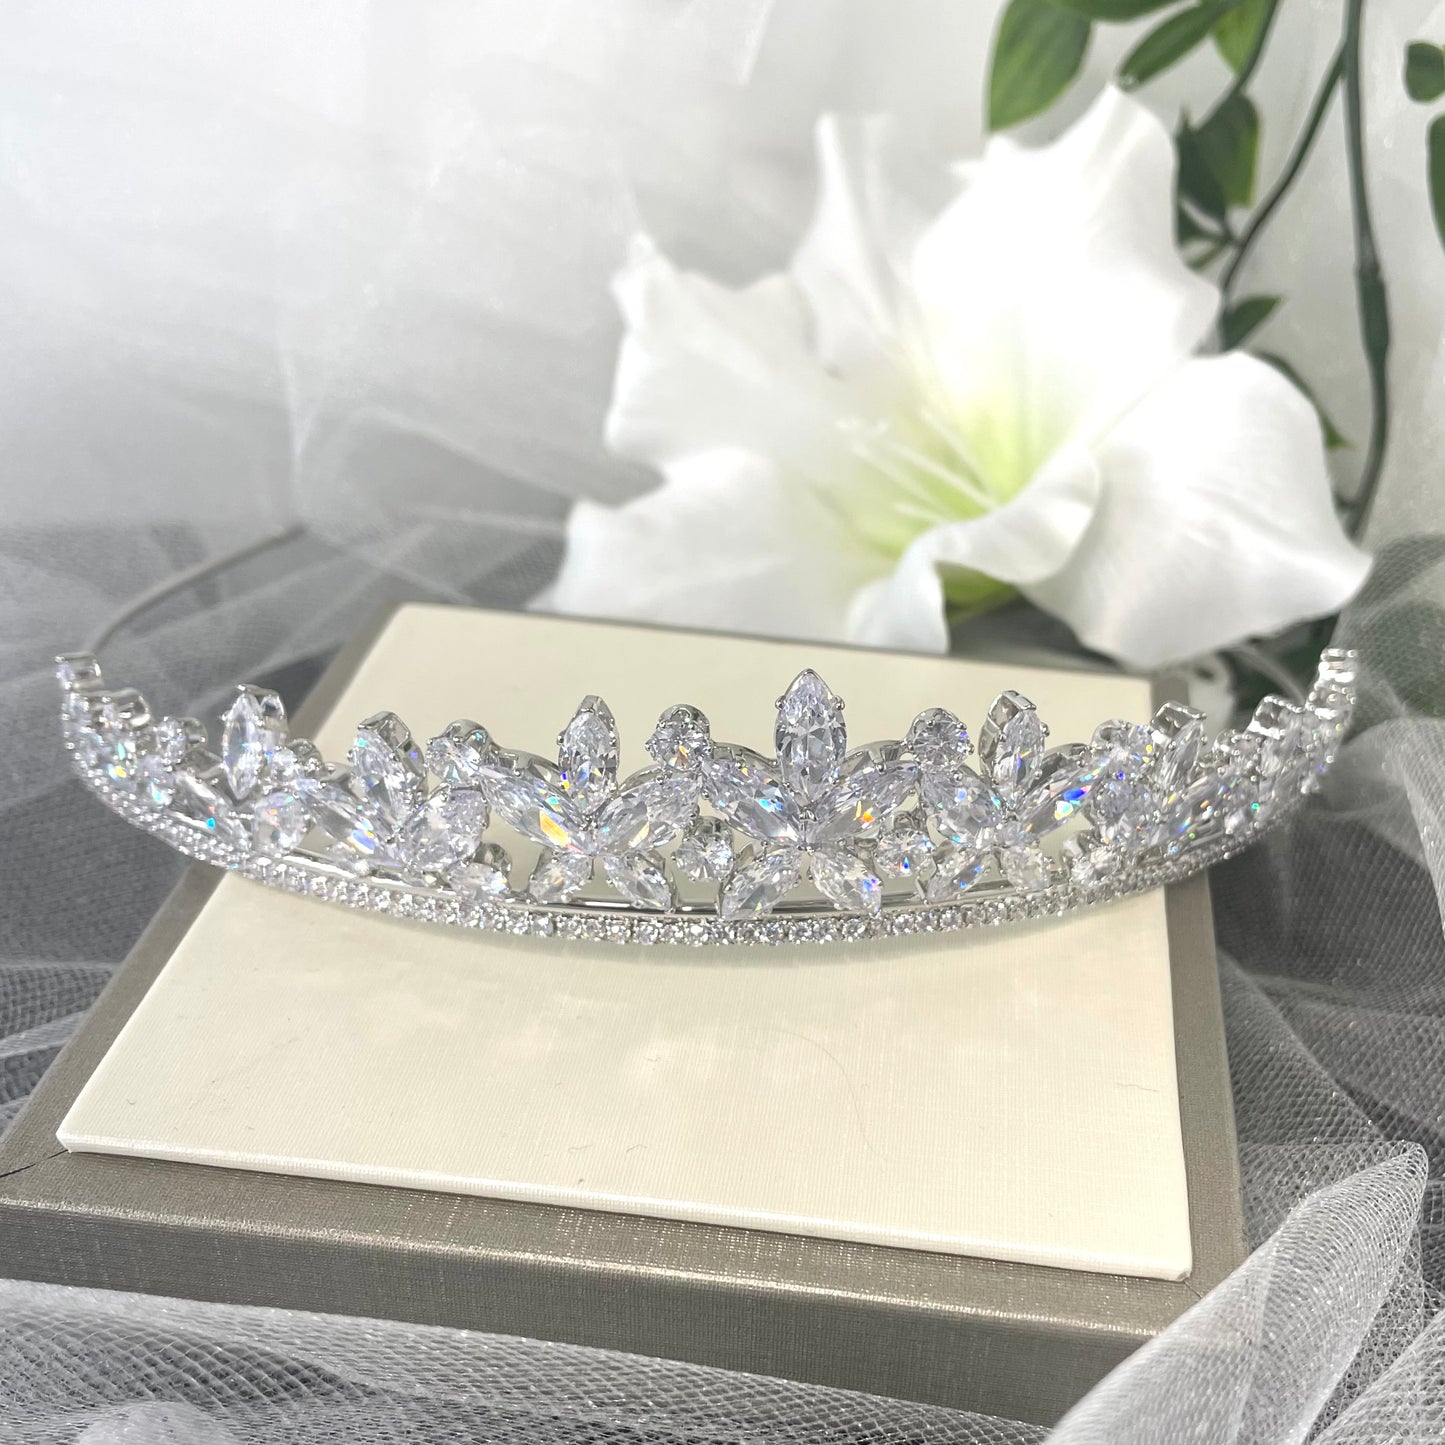 Sia Crystal Bridal Wedding Tiara Headpiece